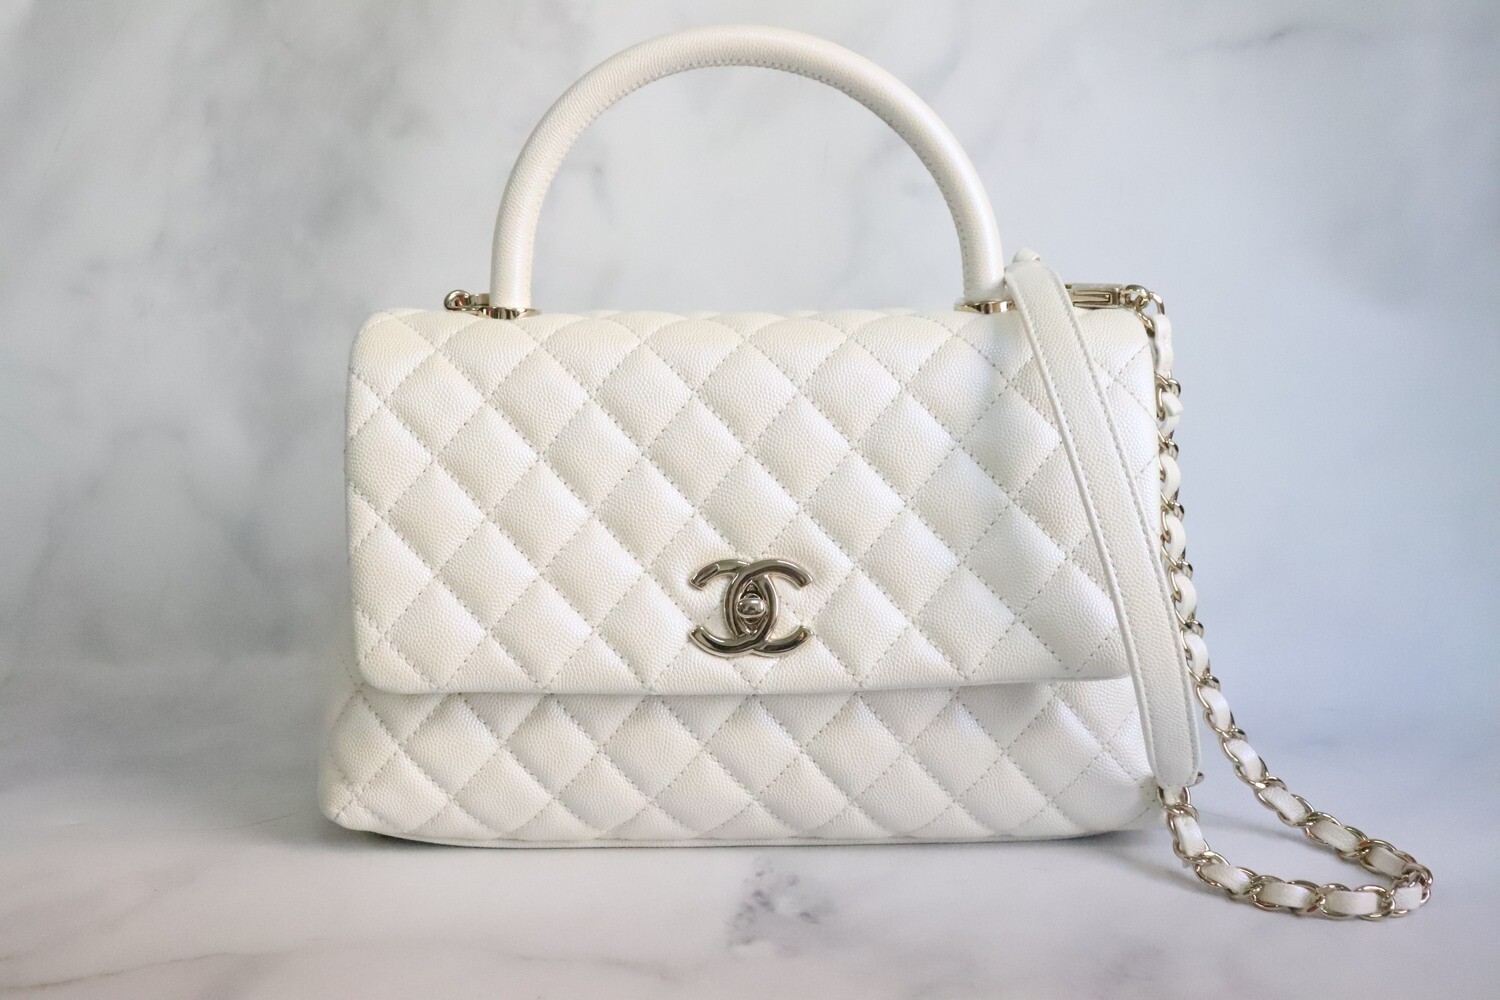 Chanel Coco Handle Medium, Iridescent White Caviar Leather, Gold Hardware,  Preowned in Box - Julia Rose Boston